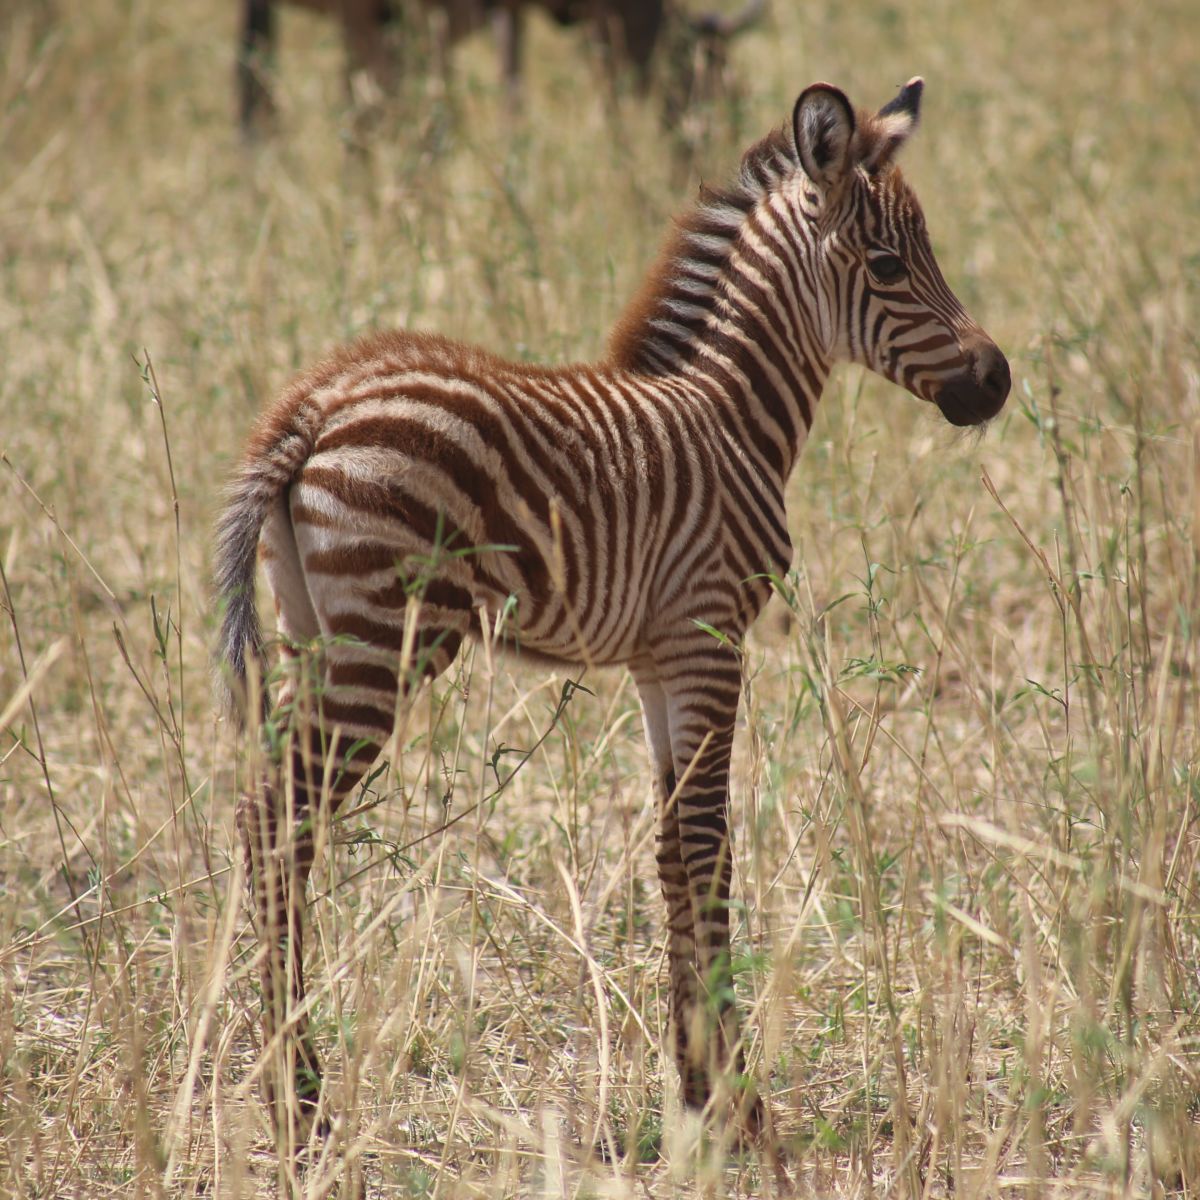 Zebra foal standing in tall grass